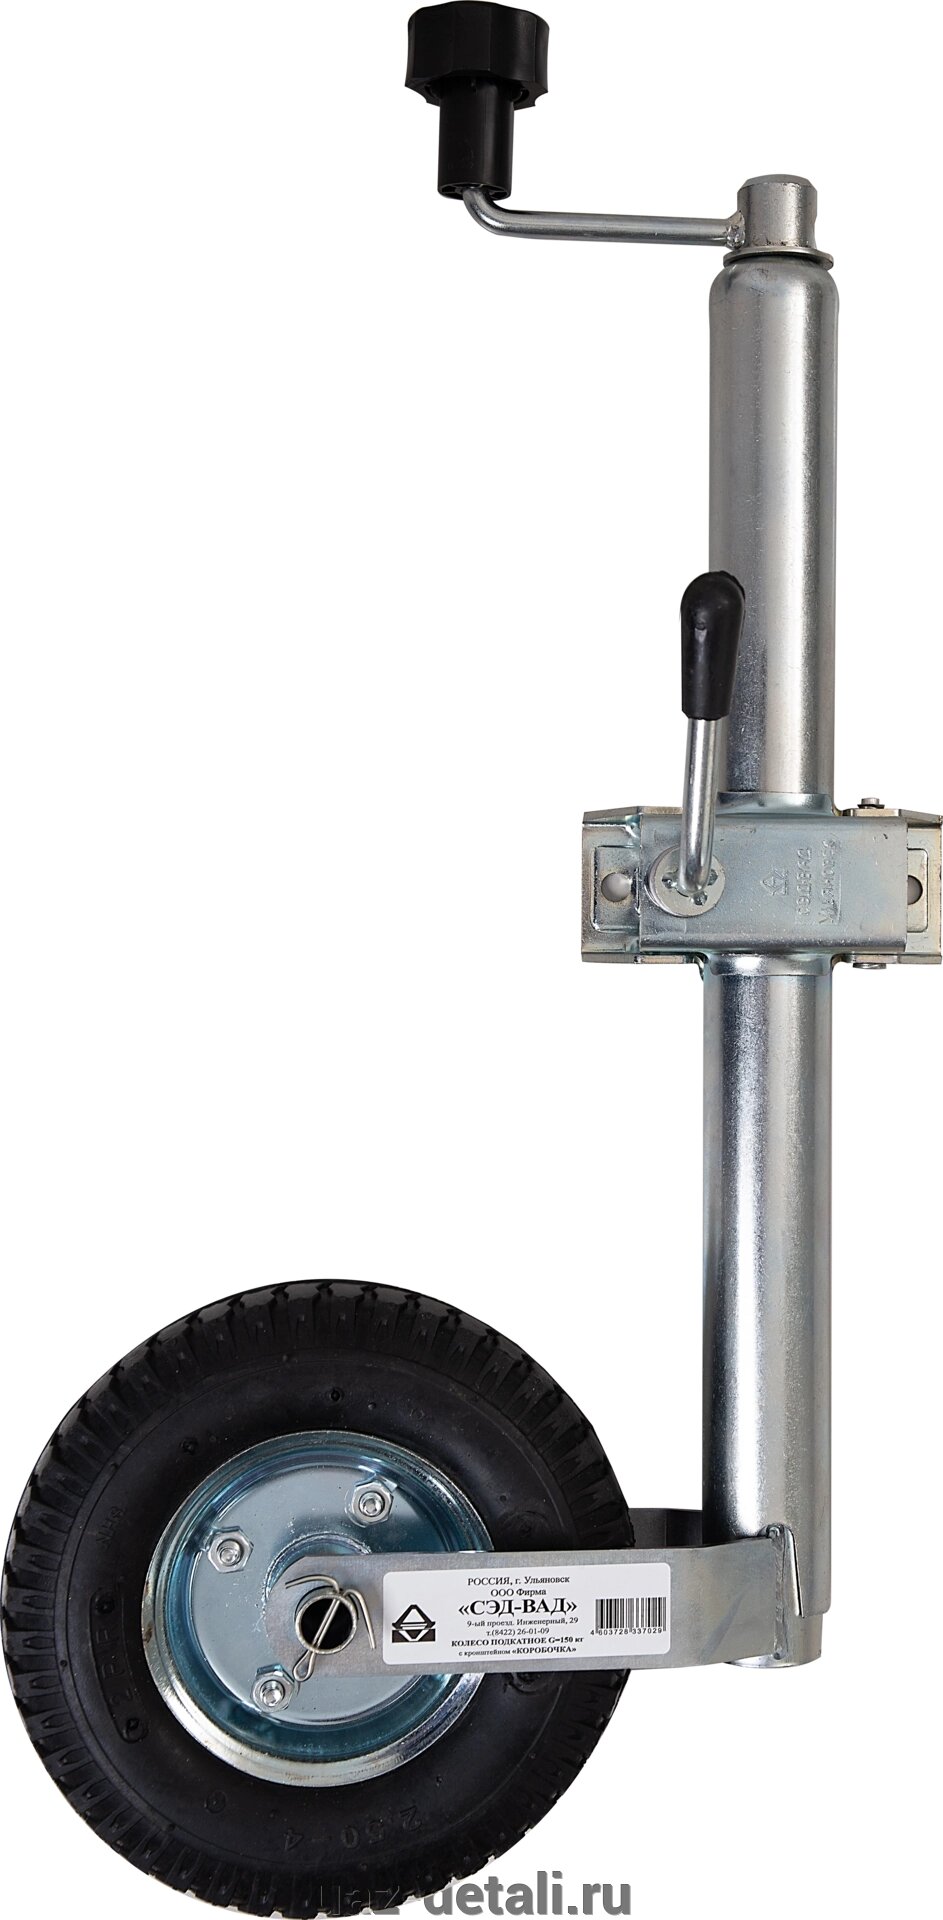 Опорное подкатное колесо надувное (пневмошина) с хомутом для легкового прицепа от компании УАЗ Детали - магазин запчастей и тюнинга на УАЗ - фото 1